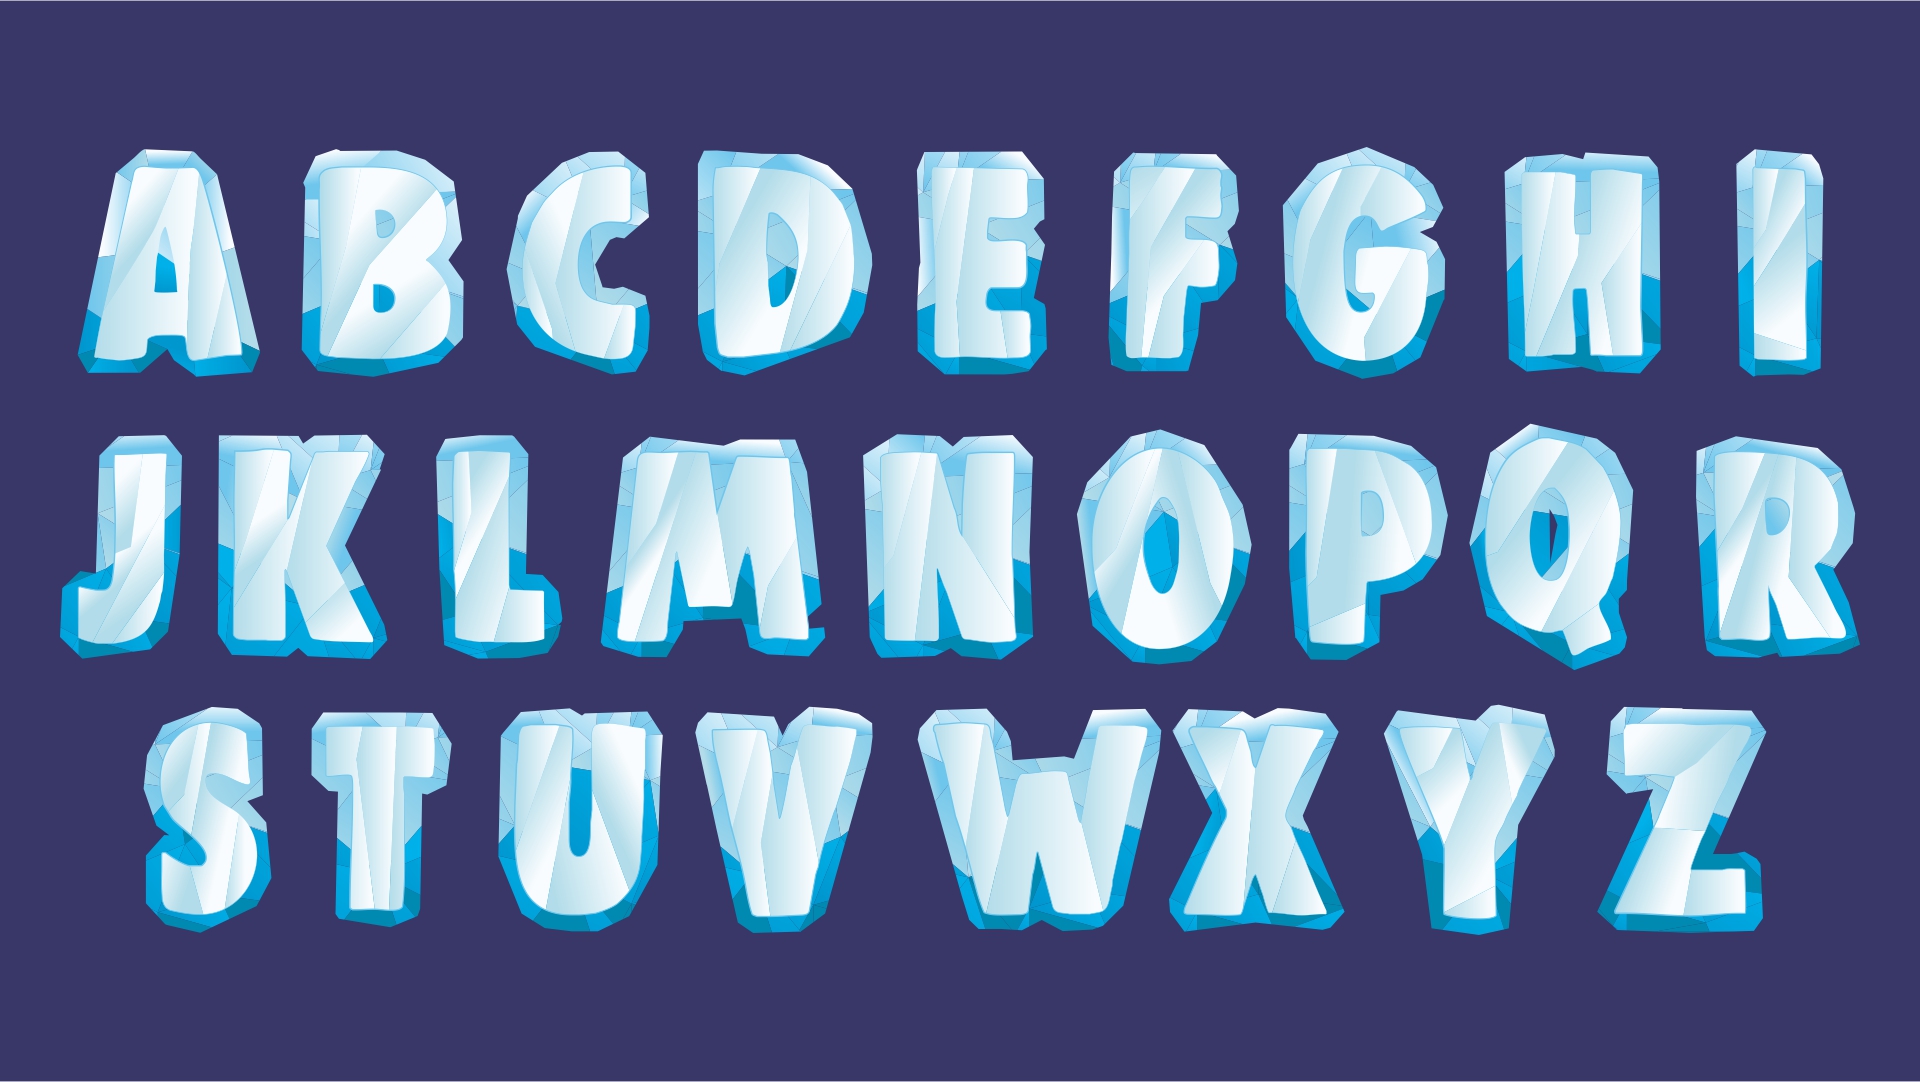 Frozen Letters Font Alphabet